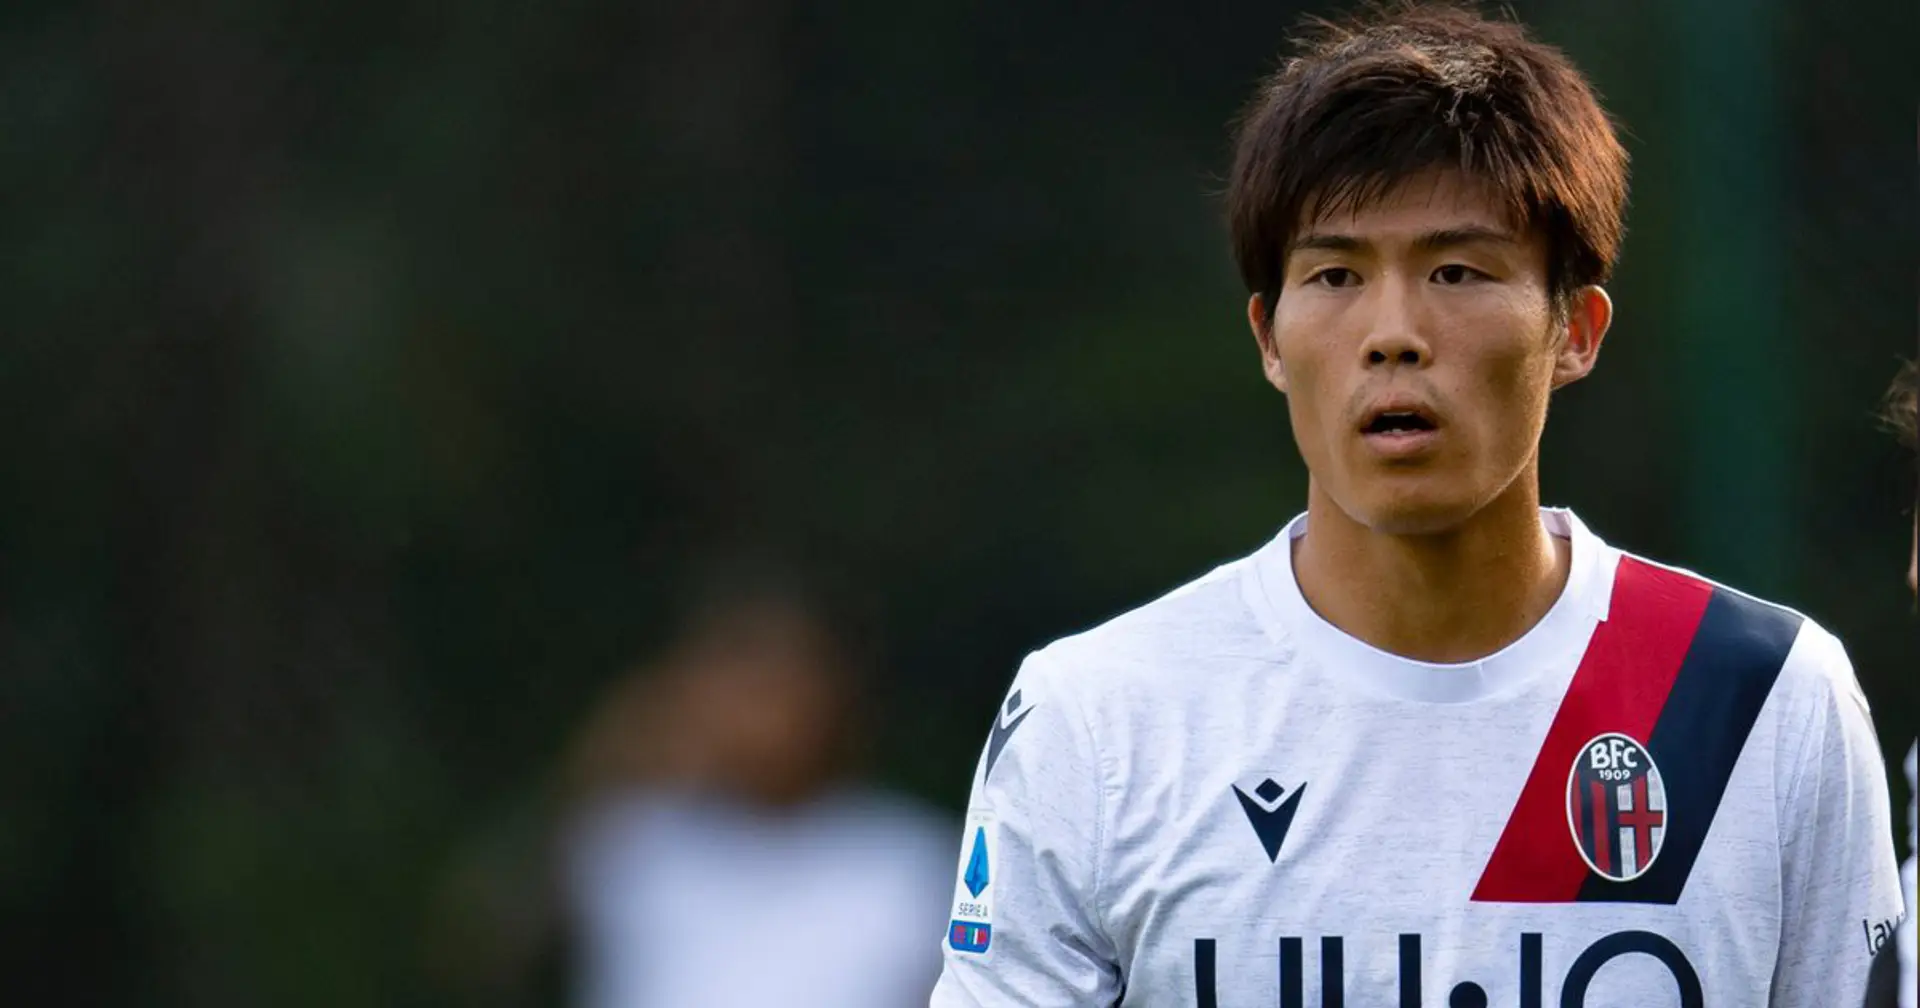 Al Milan piace Tomiyasu, terzino giapponese: i rossoneri stanno pensando ad uno scambio con il Bologna